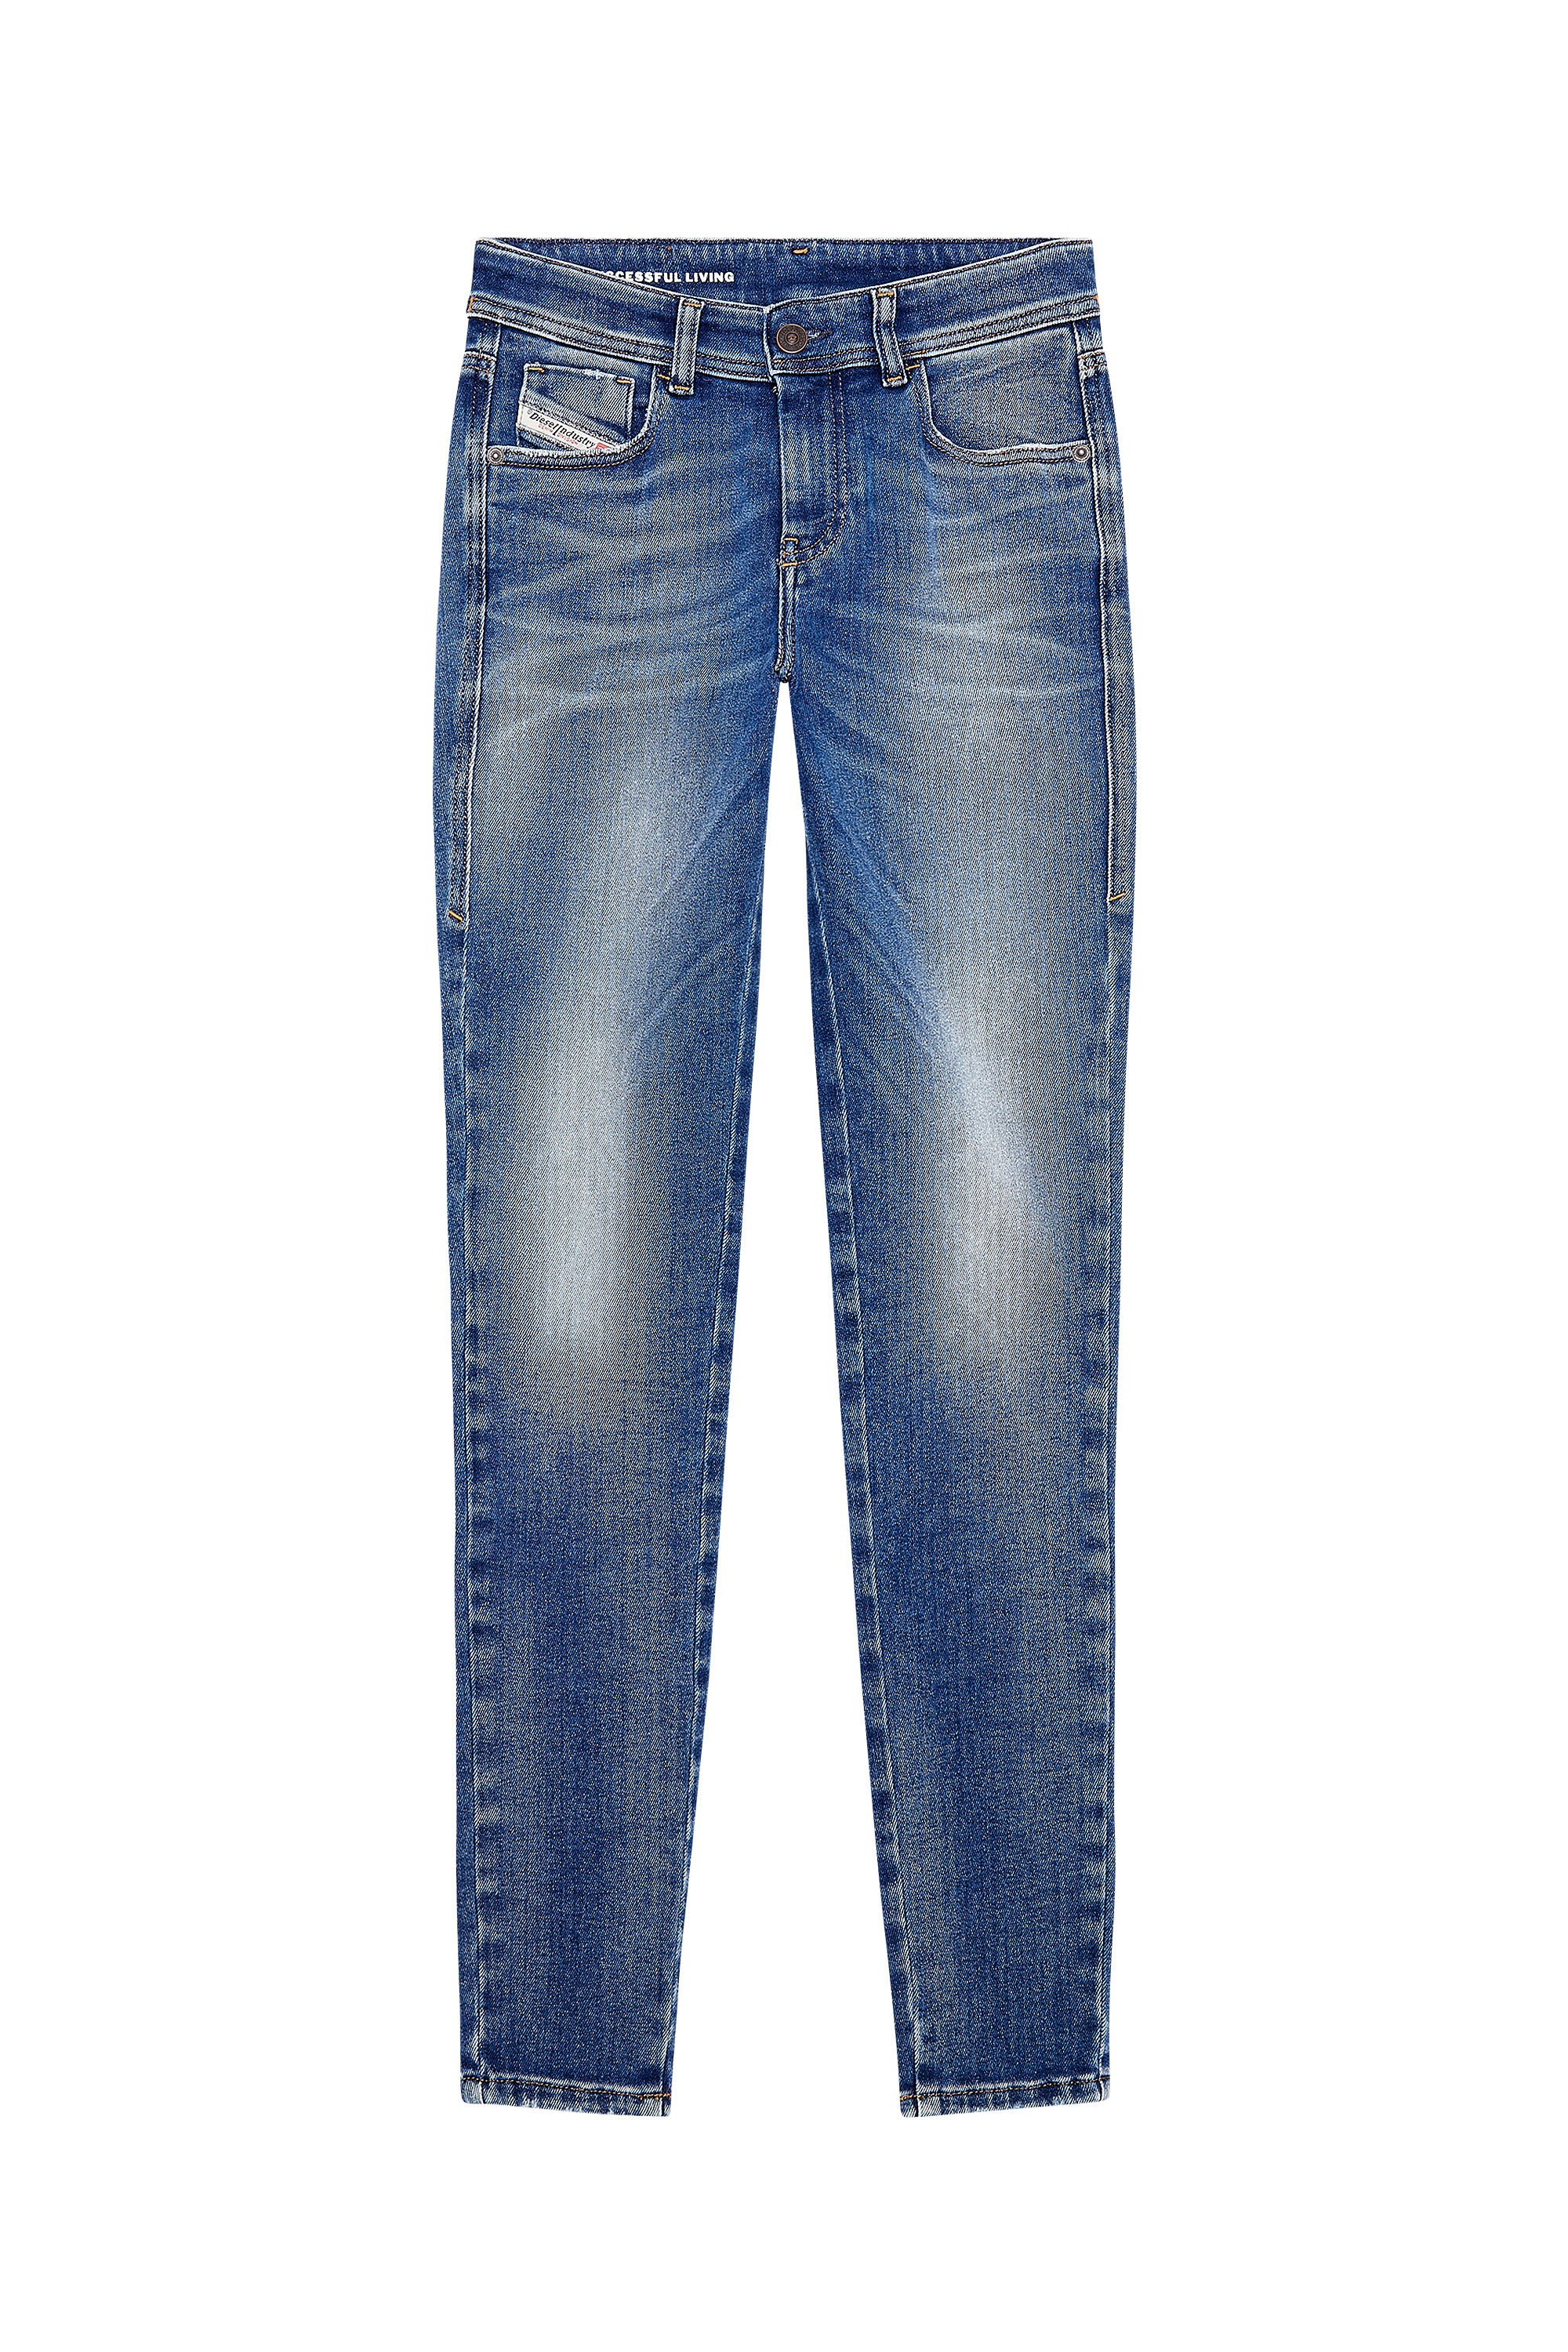 Diesel - Super skinny Jeans 2017 Slandy 09H90, Medium blue - Image 3